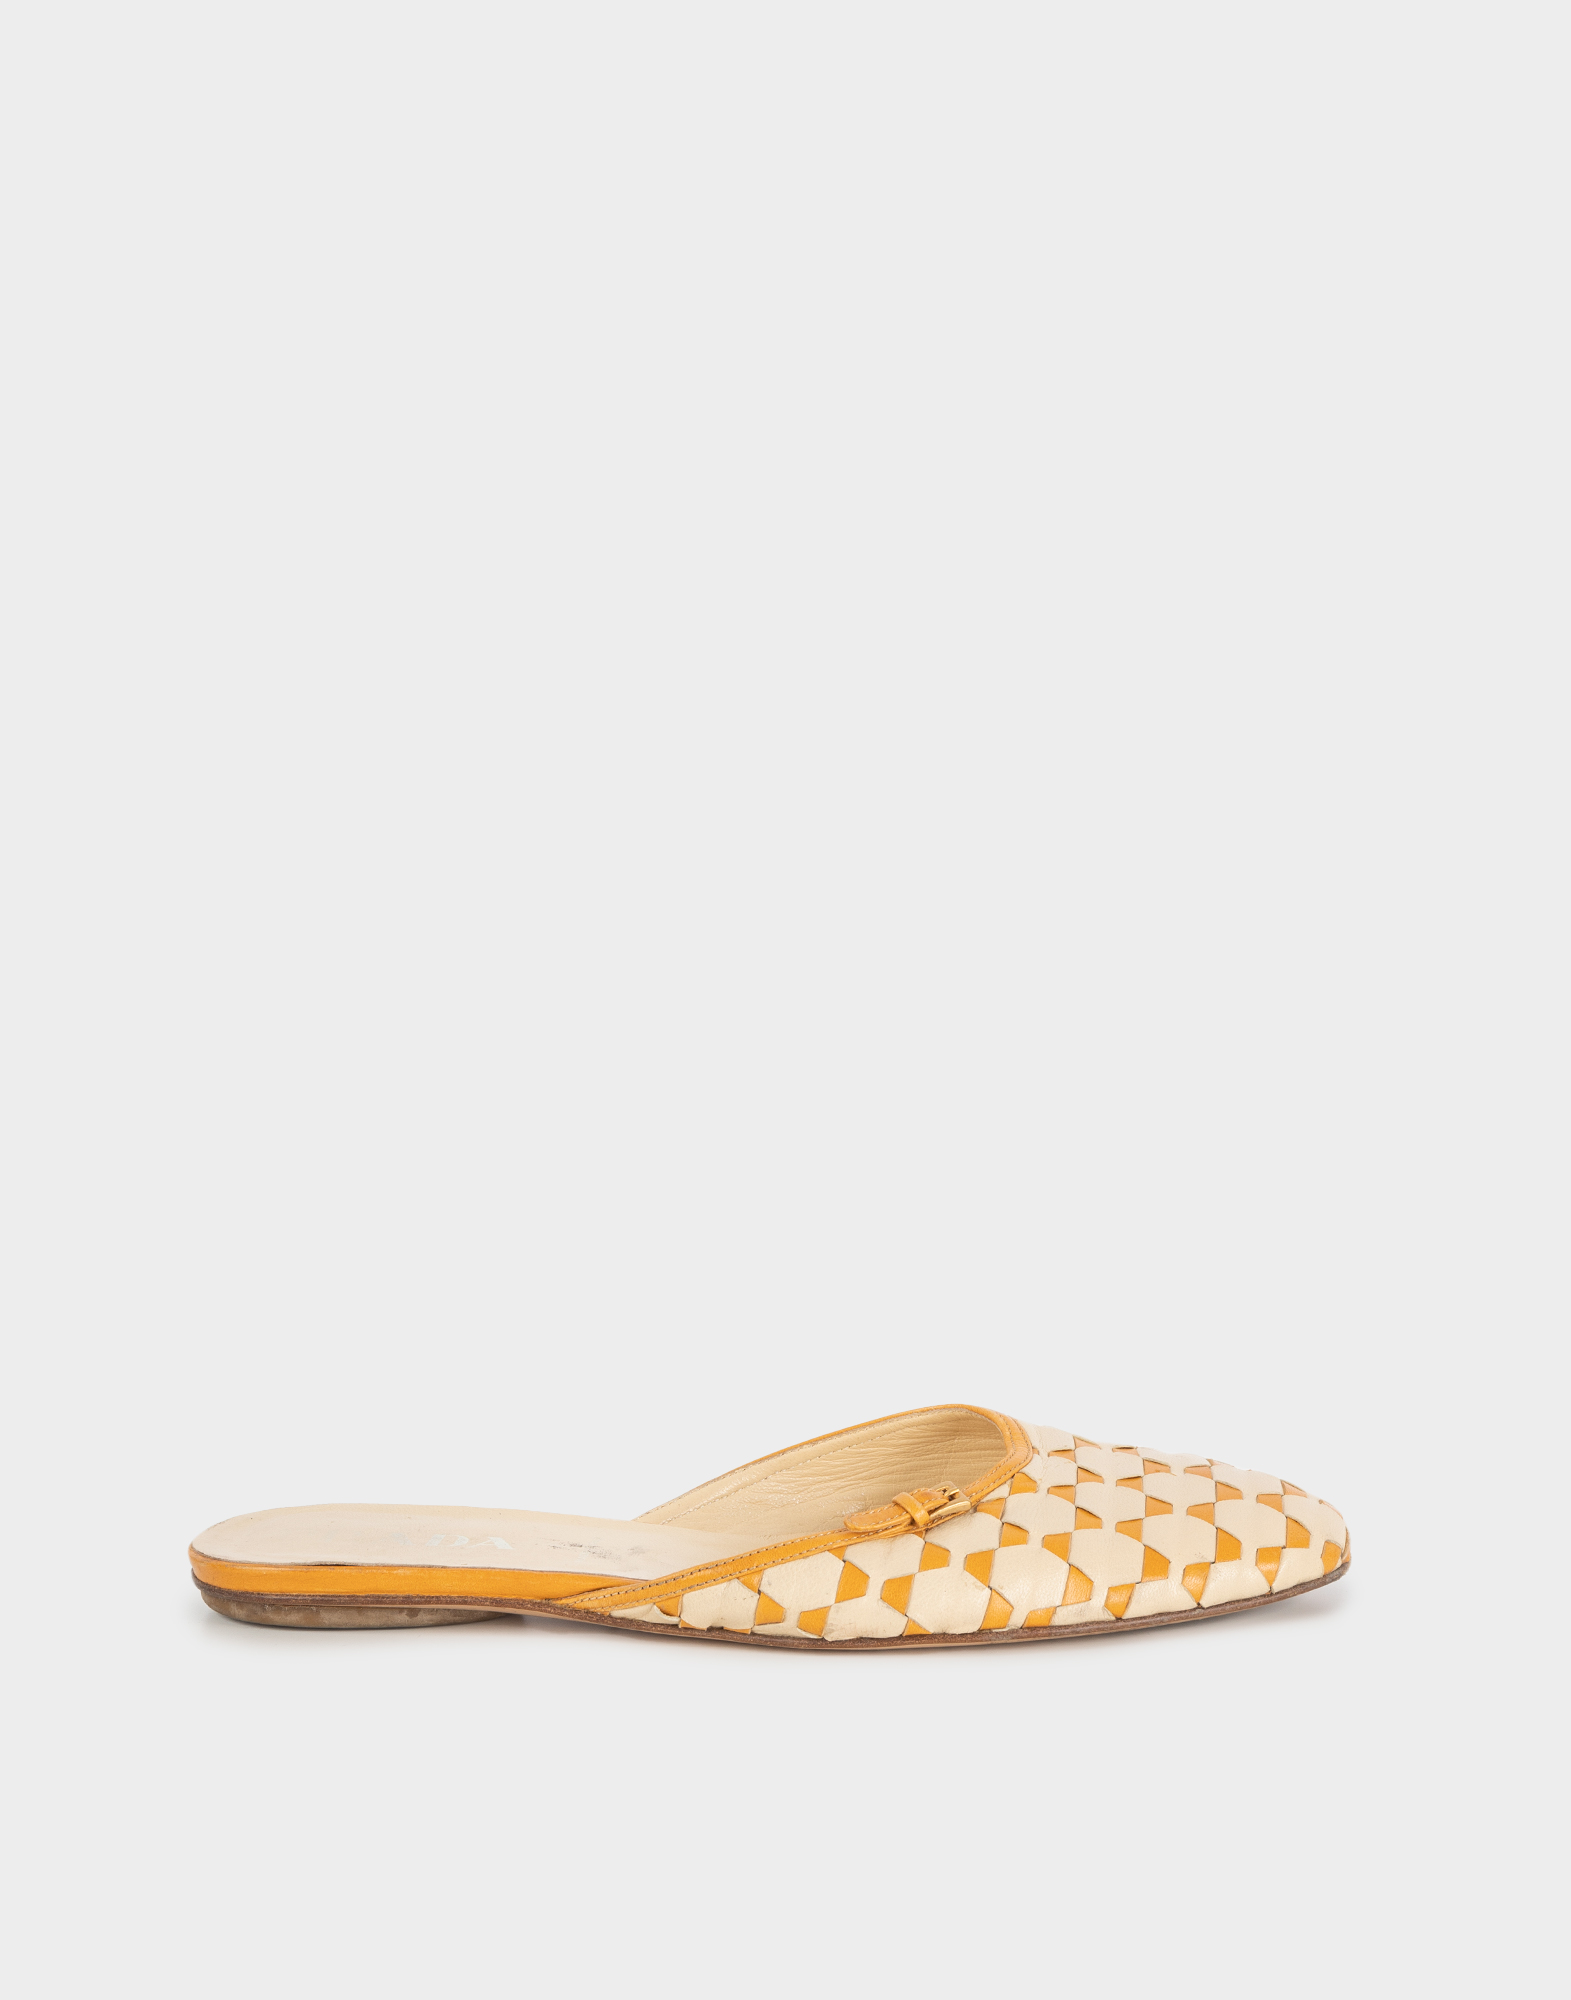 slippers da donna basse in pelle beige e arancioni con piccola fibbia dorata